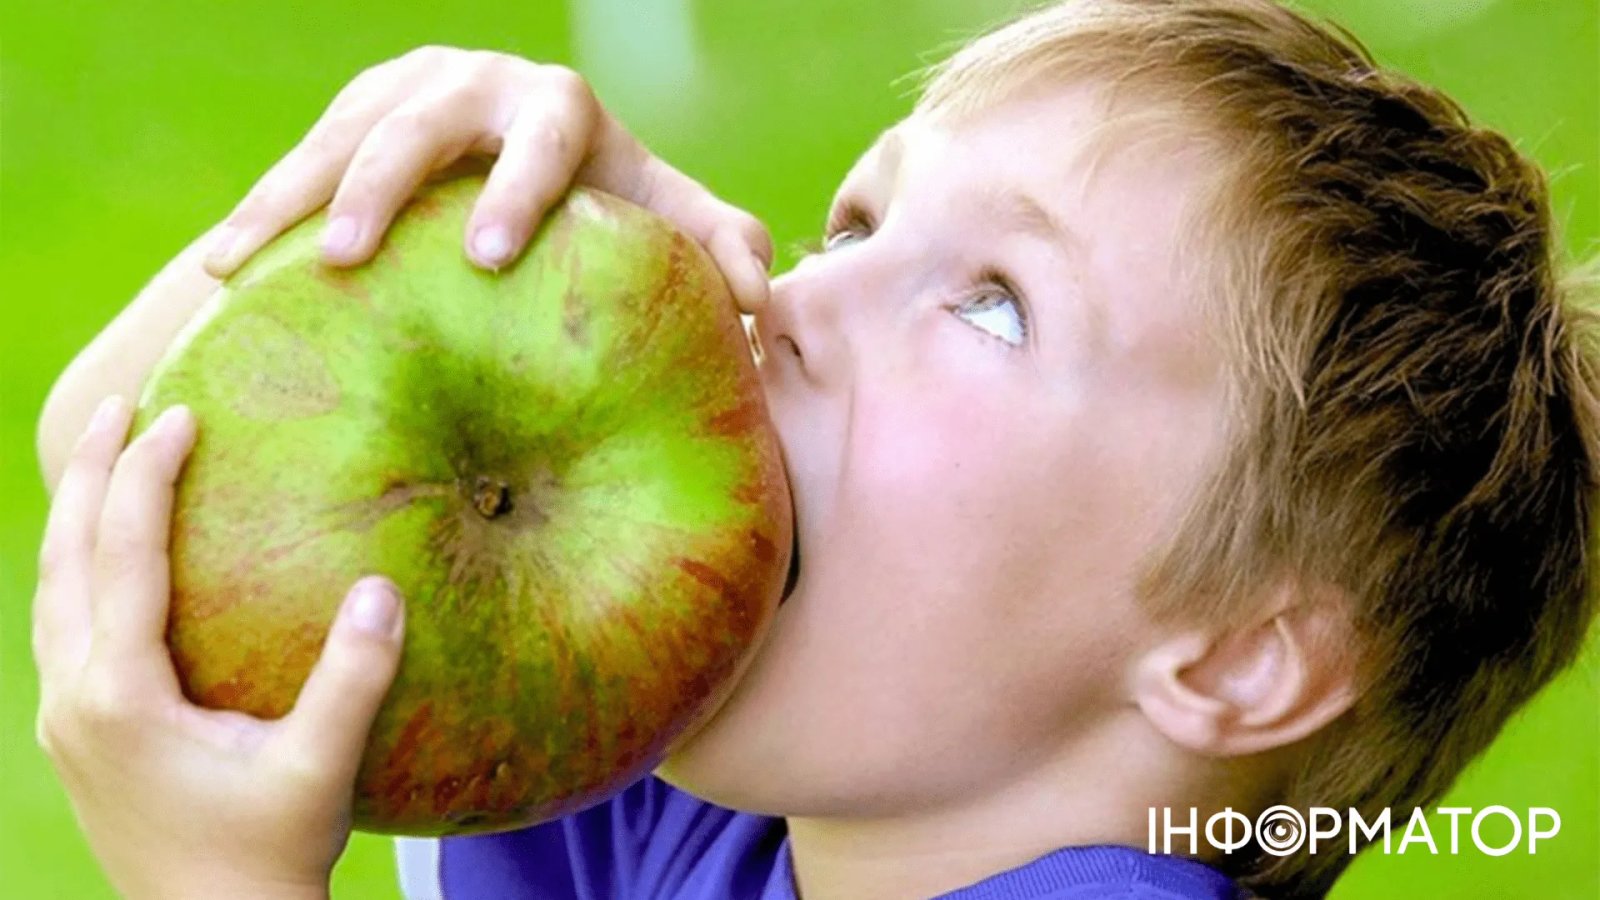 Ешь больше фруктов и овощей. Гигантское яблоко. Большие фрукты. Крупные яблоки. Фрукты для детей.